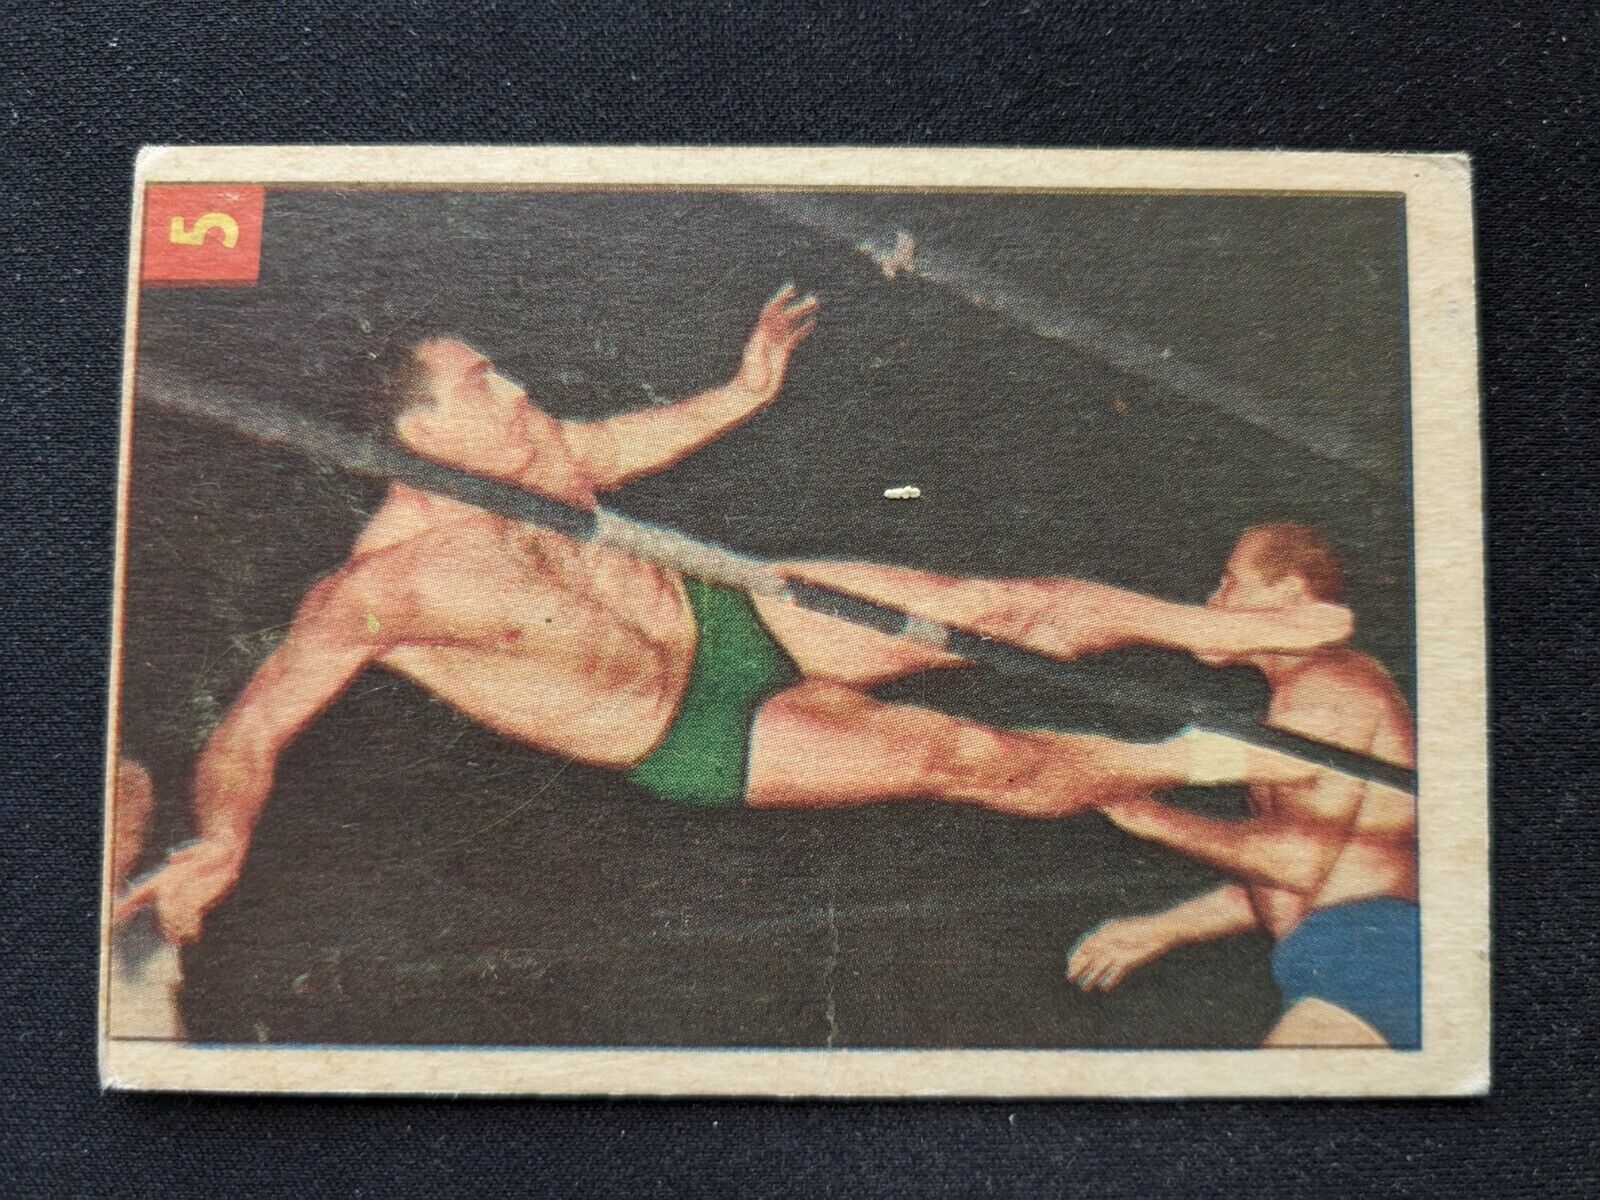 1954 Parkhurst Wrestling Card # 5 Argentina Rocca  (VG)